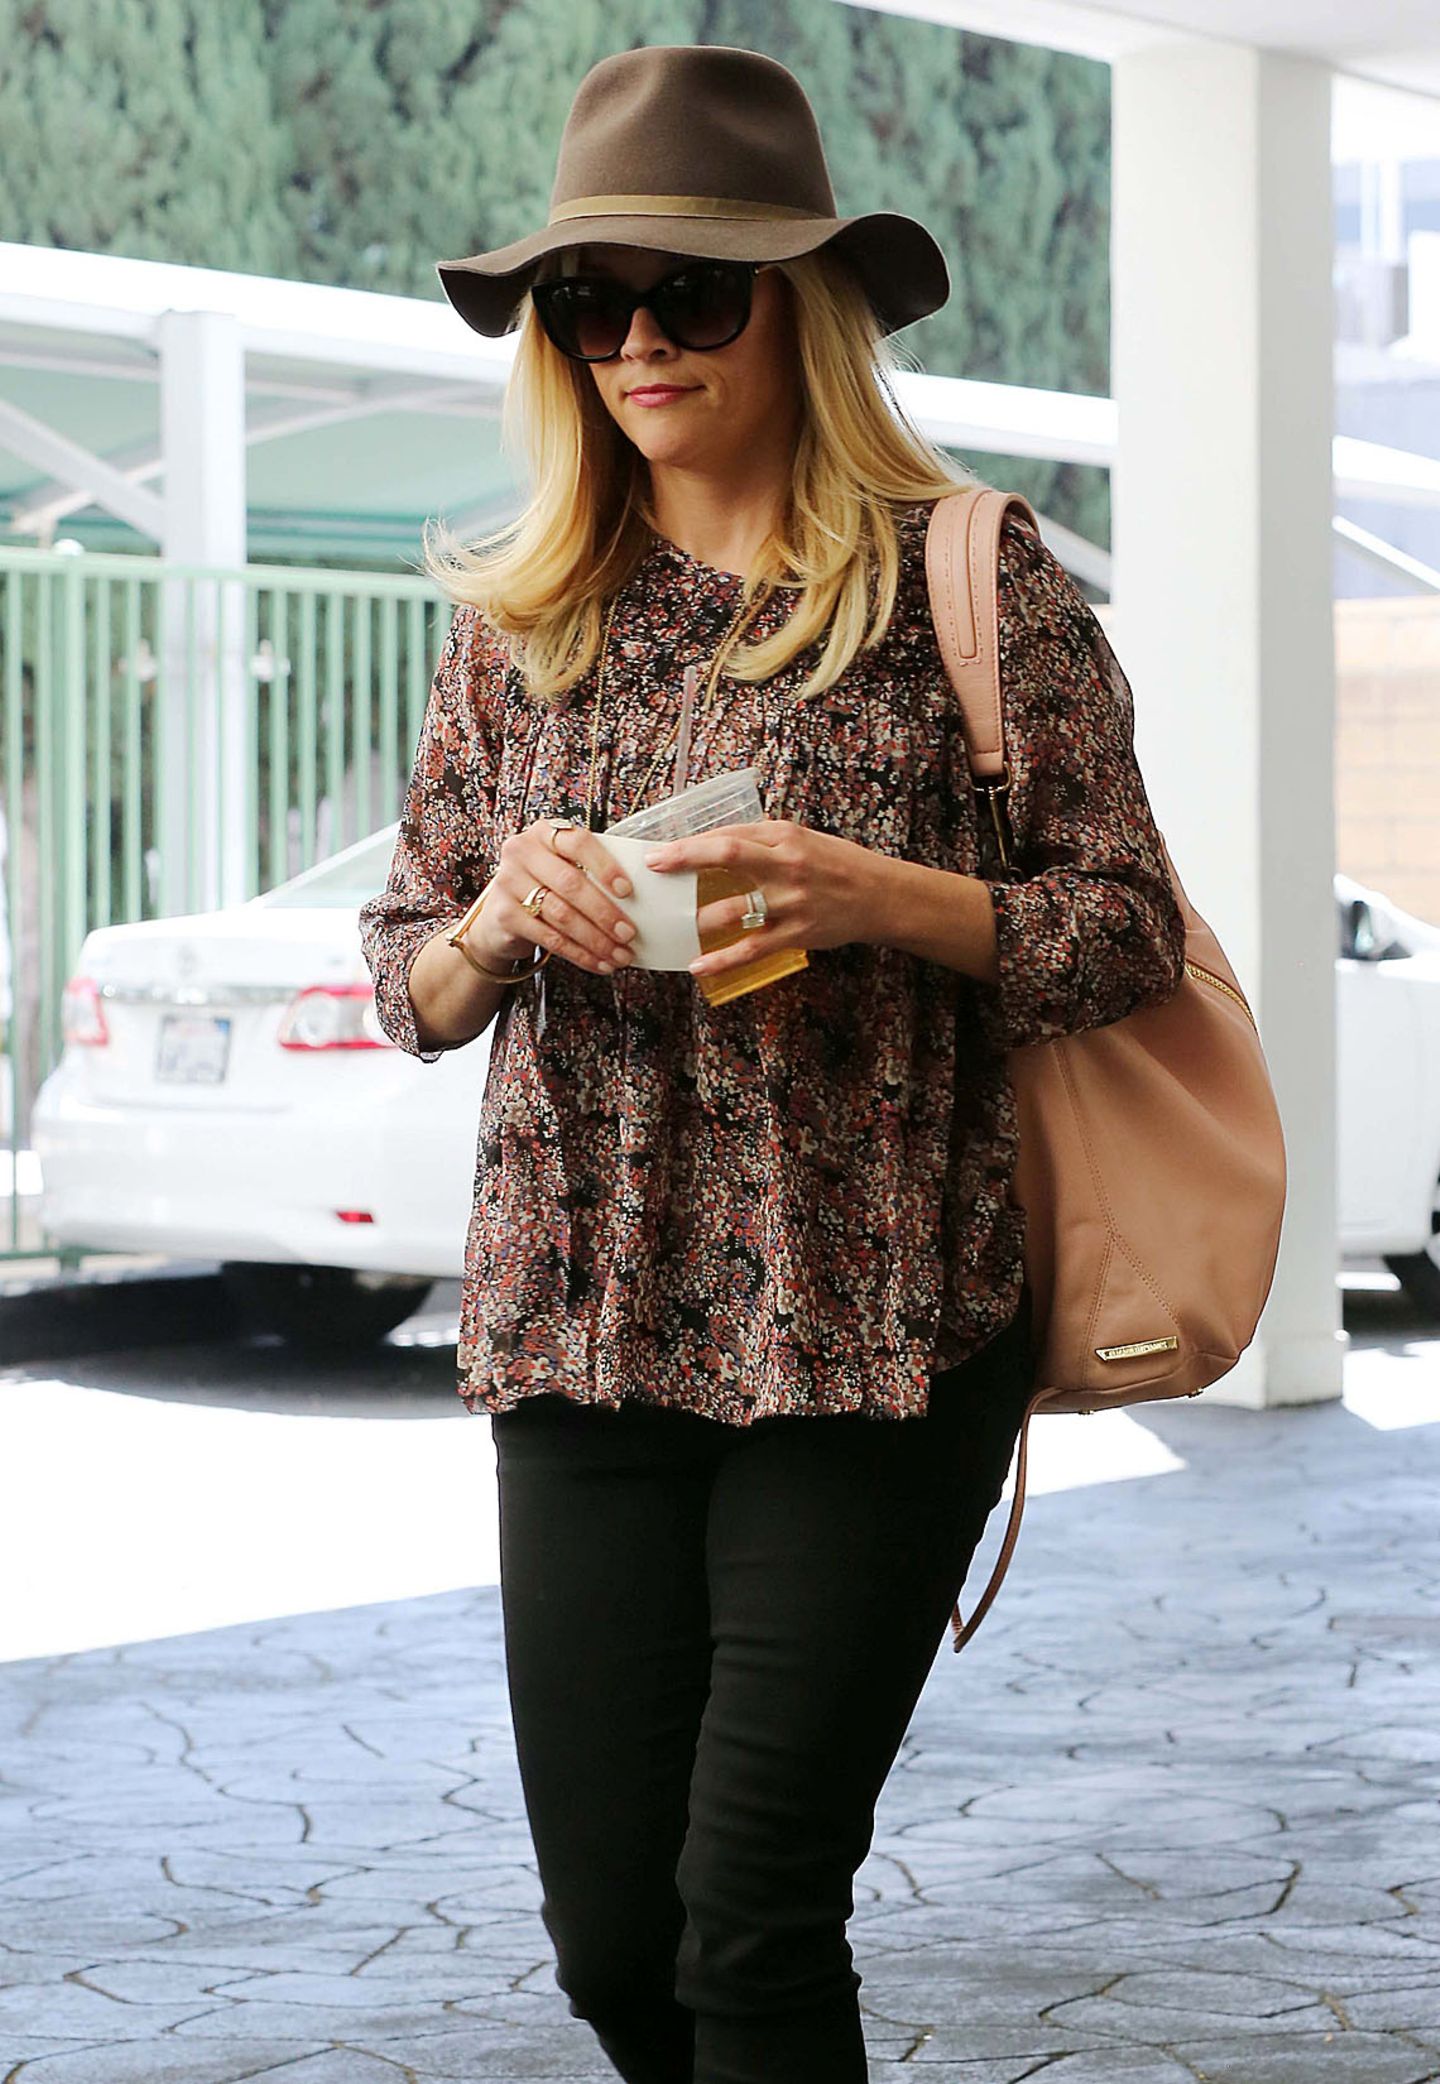 Hollywoods Sonnenschein: Egal, wo Reese Witherspoon sich Blicken lässt - mit ihrer sympathischen Art und ihrem Gespür für Mode gilt sie als eine der sympathischsten Celebrities. Ihr legeres Outfit peppt die 38-Jährige mit zur Bluse abgestimmten Accessoires auf.